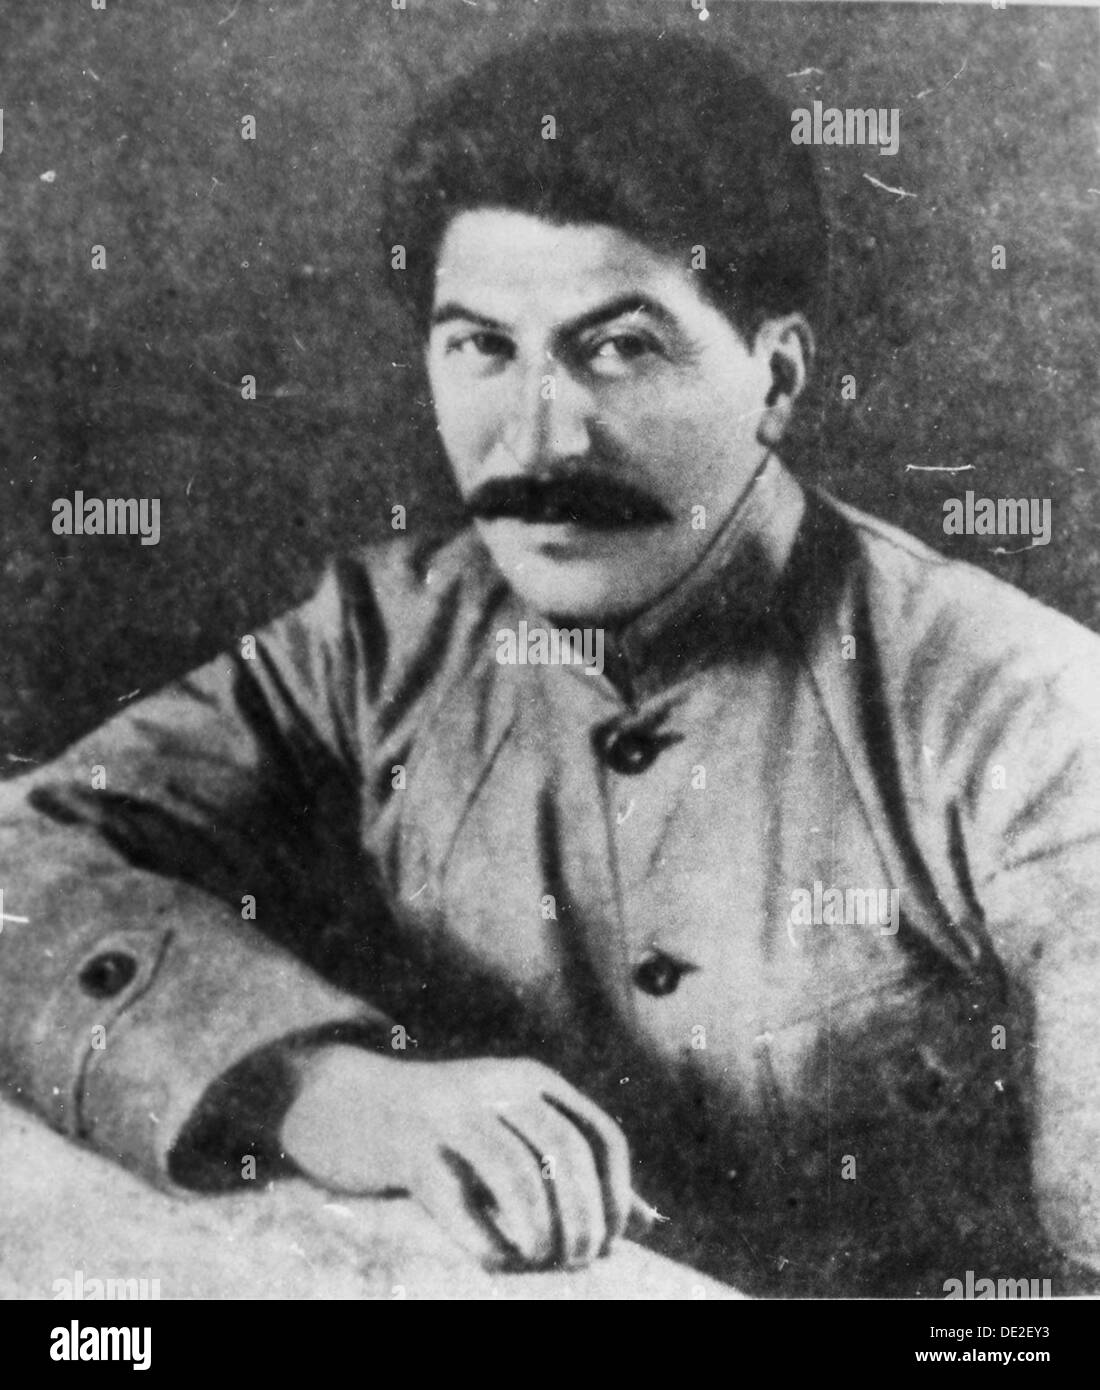 Josef Stalin, Georgisch-Sowjetischen kommunistischen und revolutionären Führer, geboren 1918. Artist: Unbekannt Stockfoto